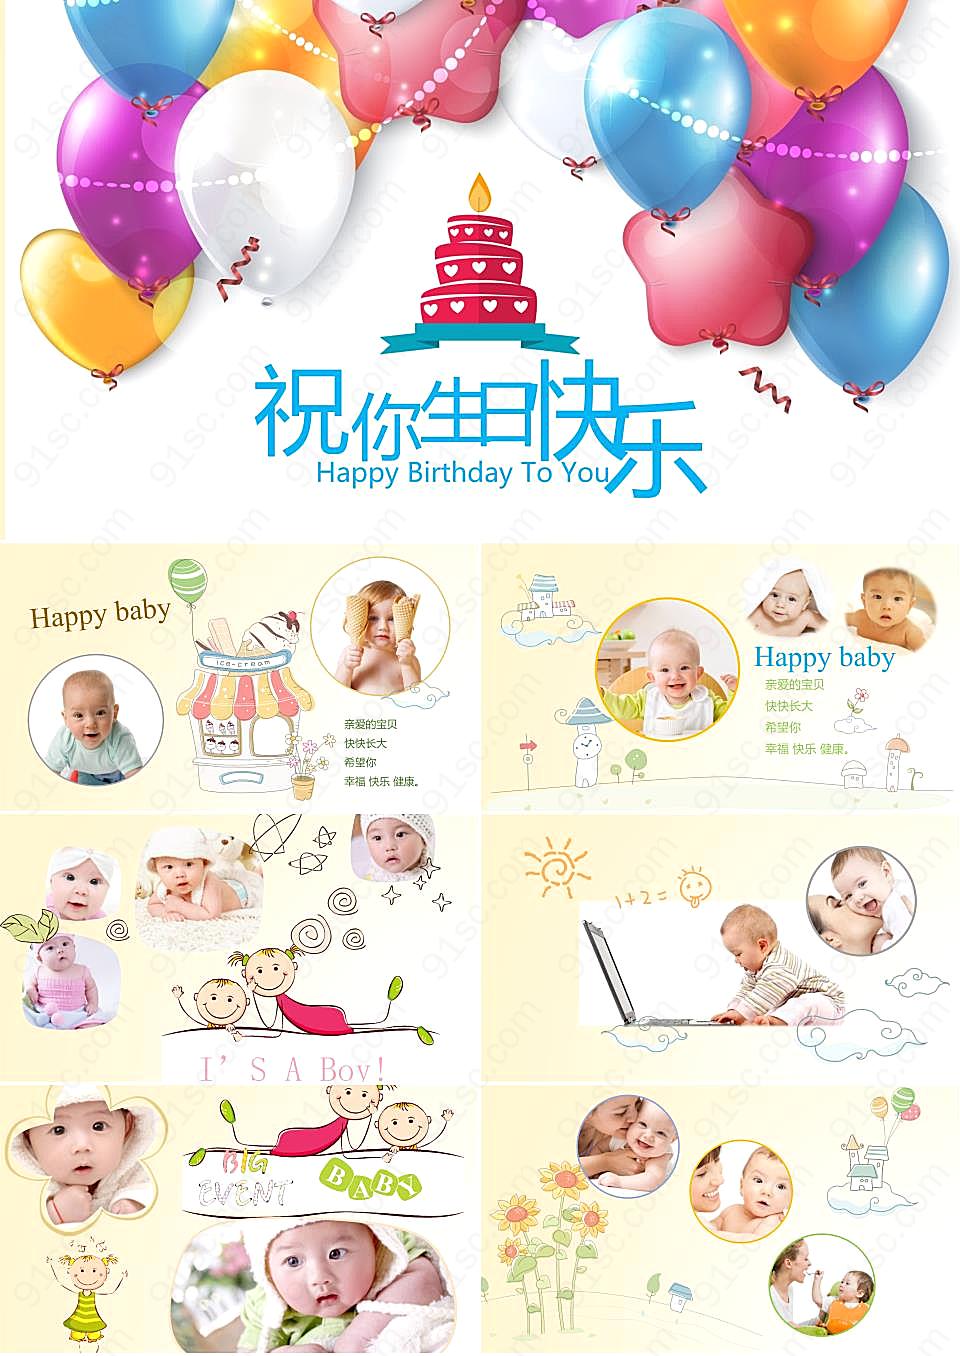 卡通气球动画背景的宝宝生日相册PPT模板